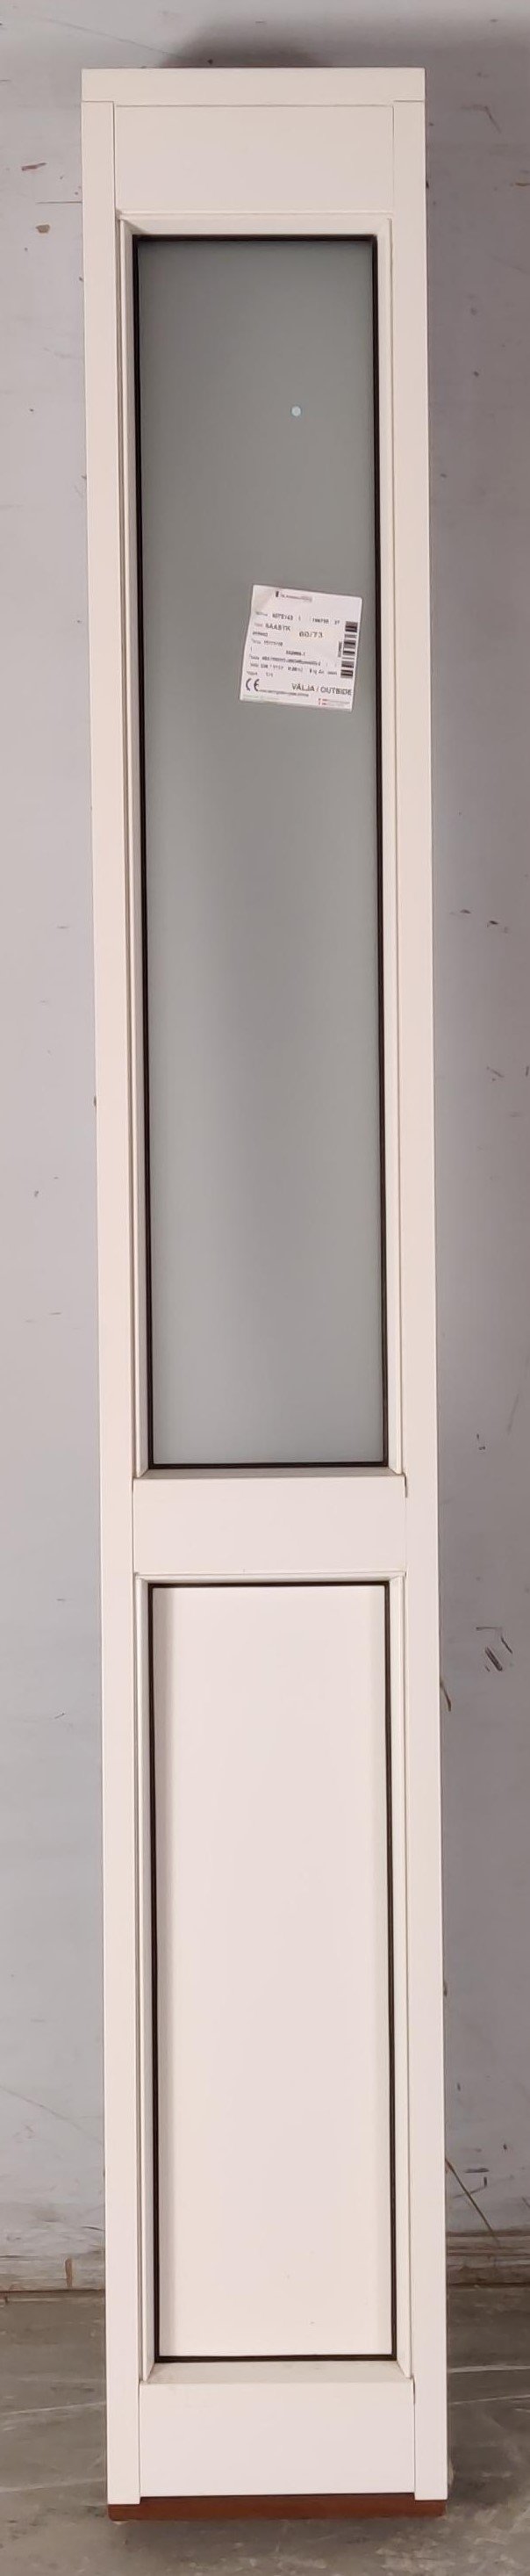 Faskarm vindue, Materret glas, Træ/alu, Hvid